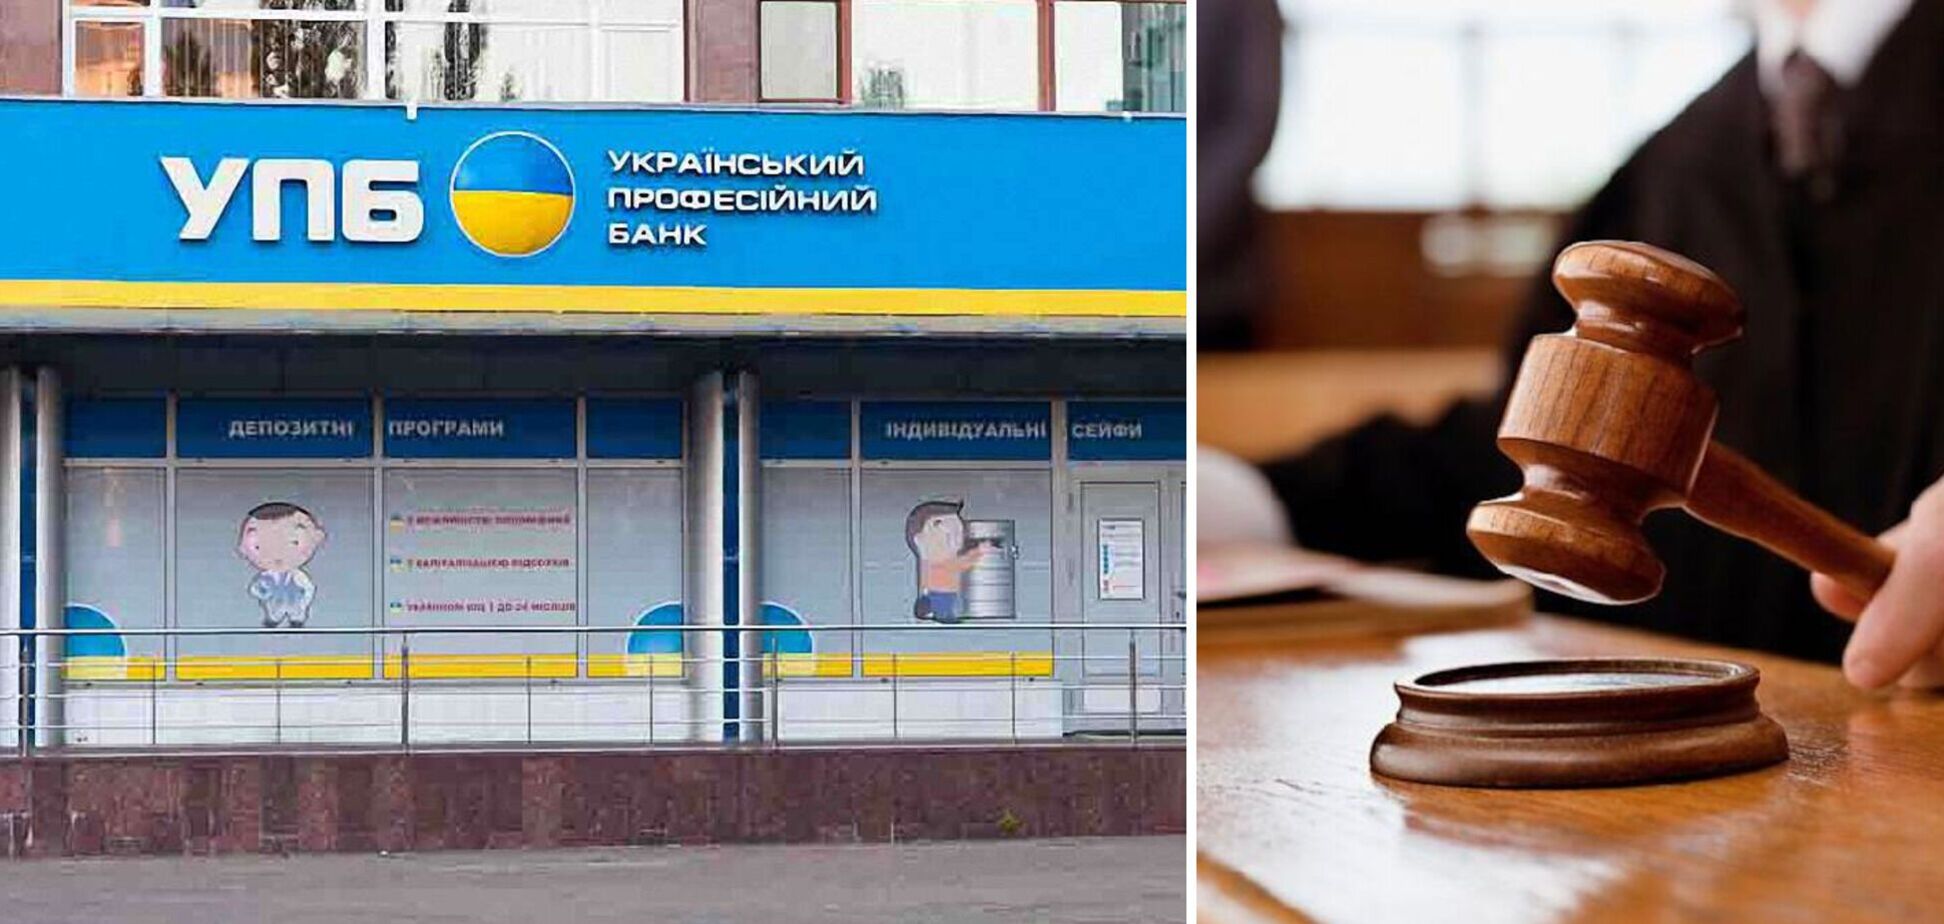 Перед введением в Укрпрофбанк Юркевича временной администрации были признаки ничтожных операций, – Сергей Лямец